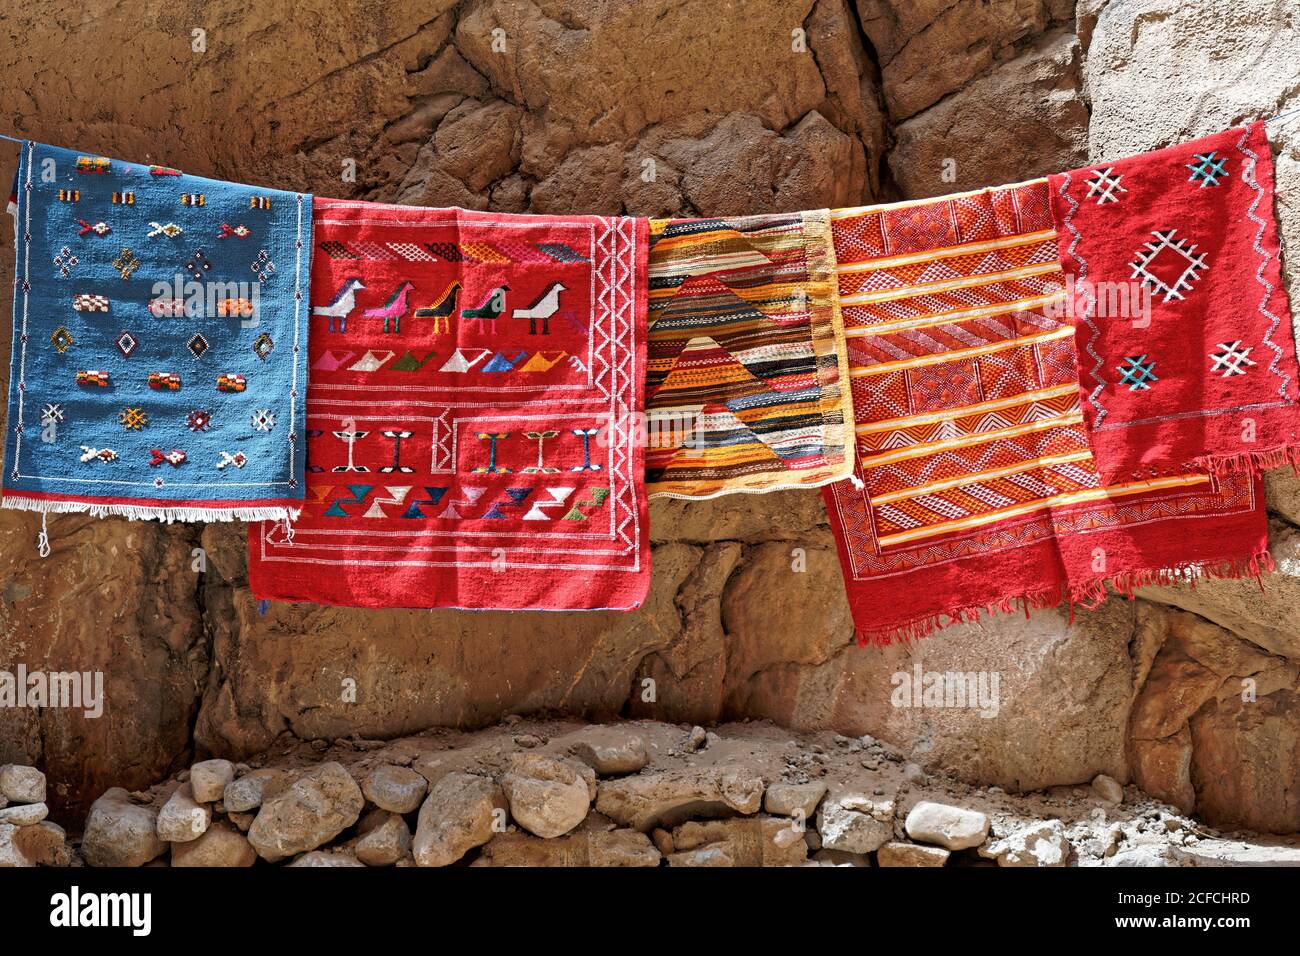 Tappeti, creativi, fiume papà, Marocco, Gola del papà, artigianato tradizionale, arabo, berbero Foto Stock